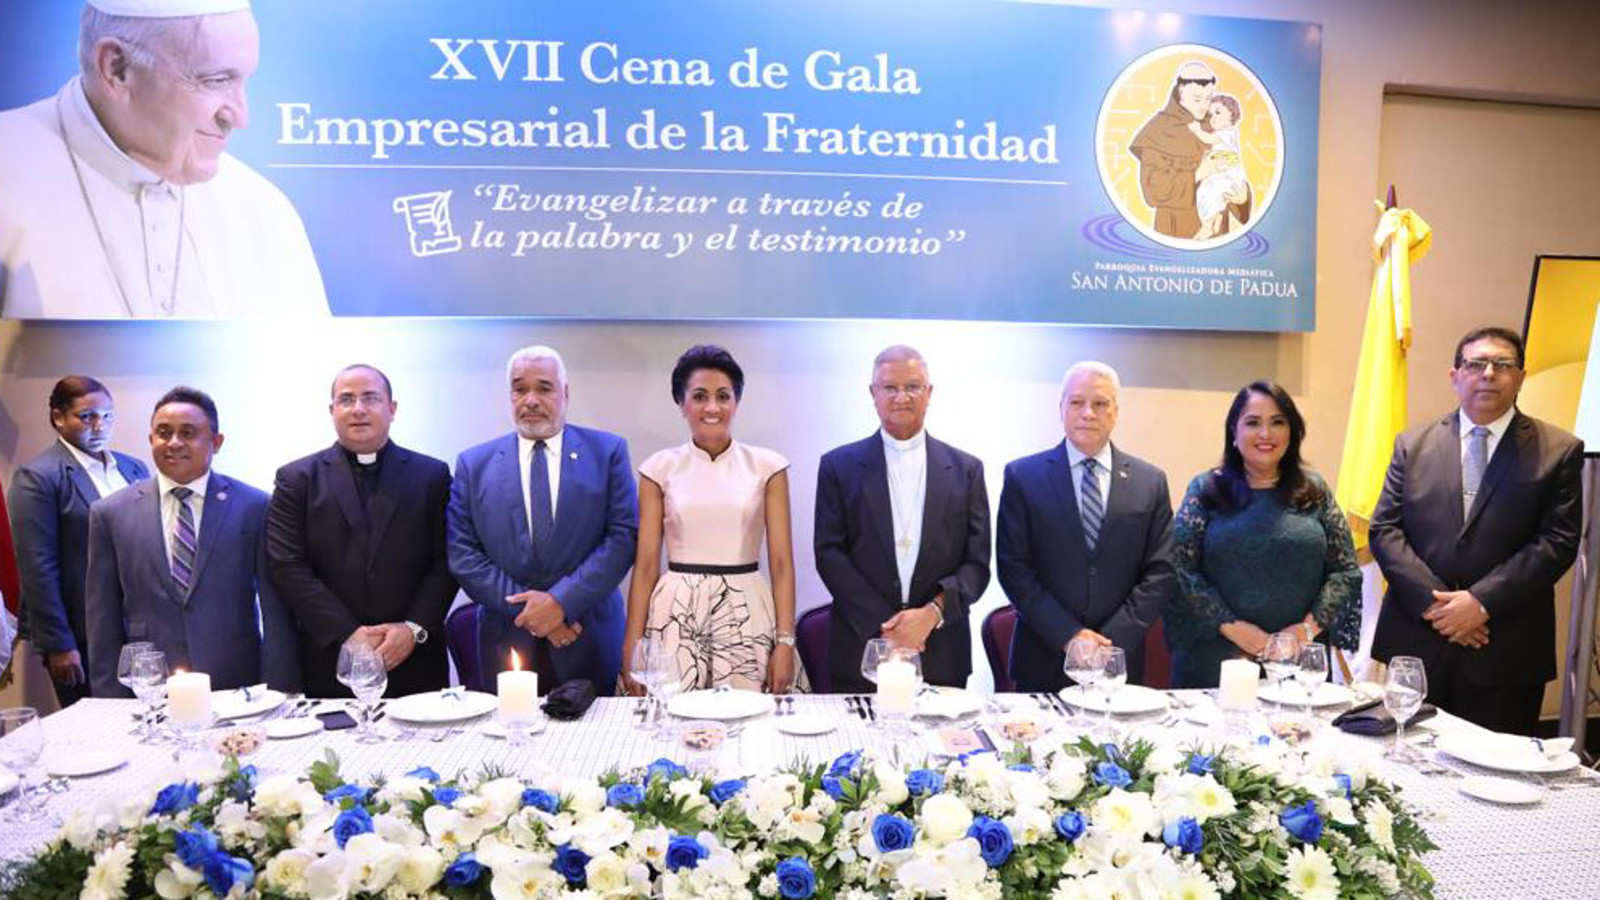 REPÚBLICA DOMINICANA: Primera Dama asiste a Cena de Gala Empresarial Parroquia San Antonio de Padua; exhortan a fortalecer familias